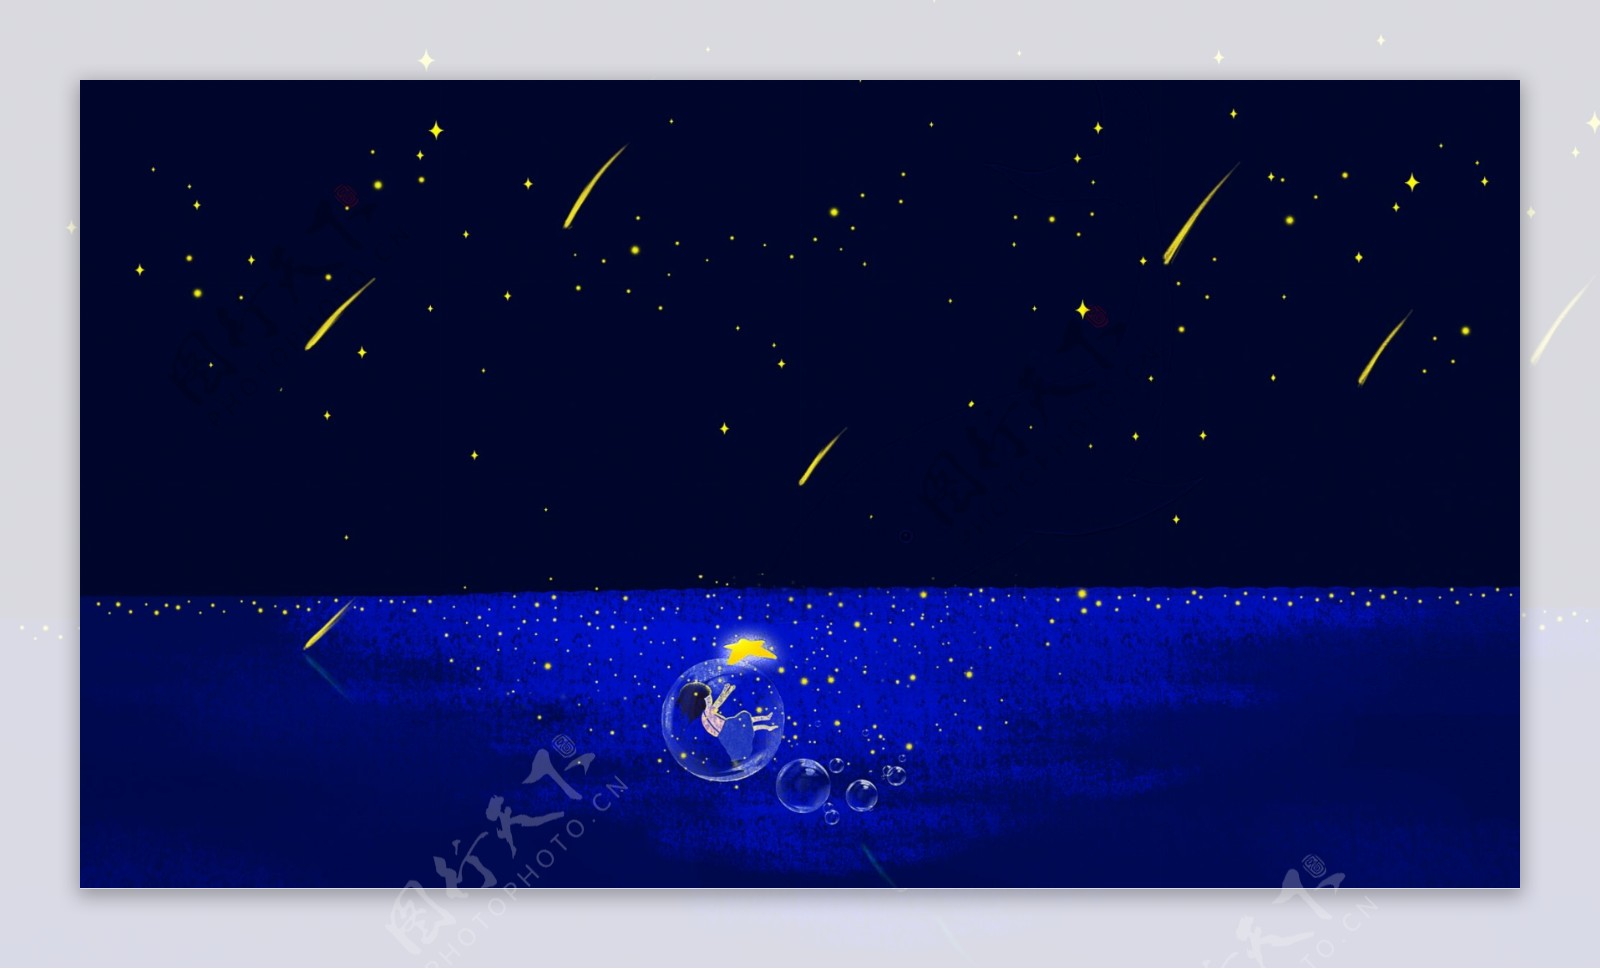 唯美流星夜空与大海背景素材